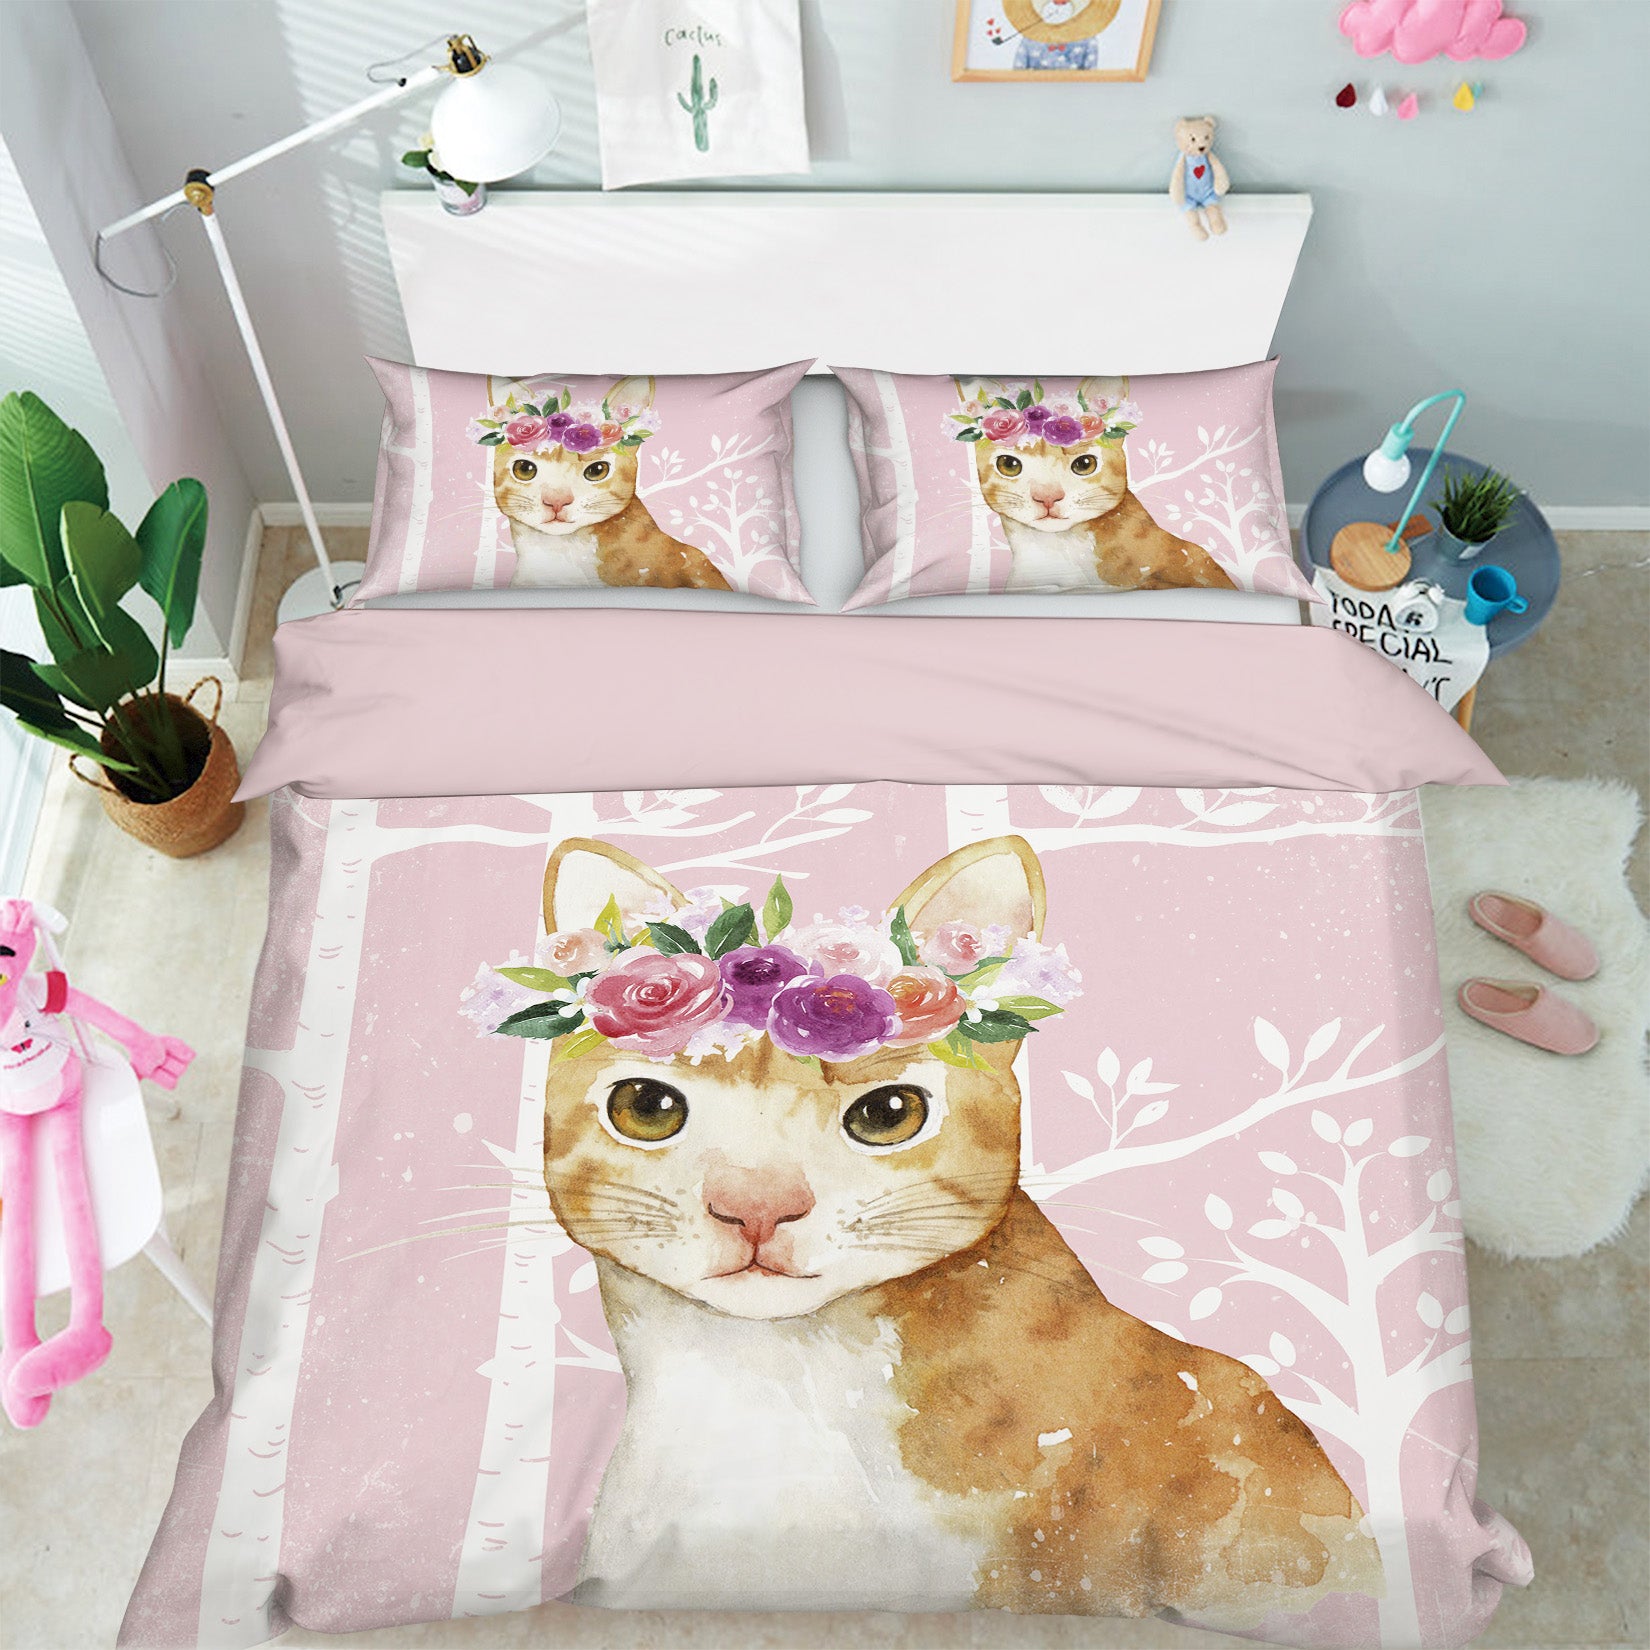 3D Orange Cat 008 Uta Naumann Bedding Bed Pillowcases Quilt